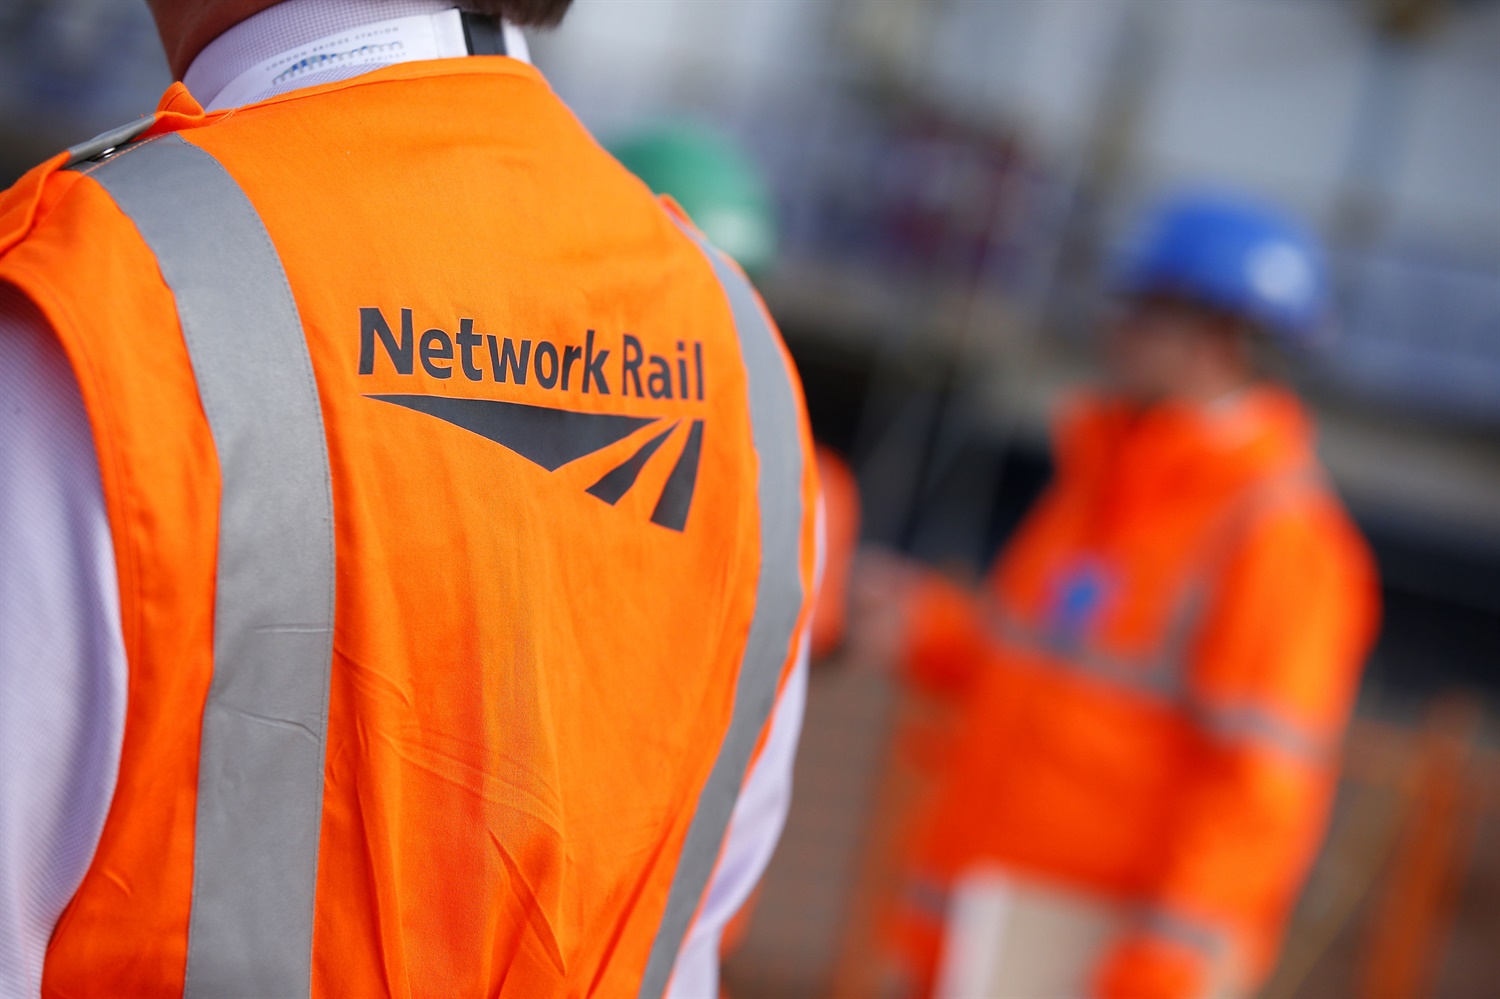 Network Rail in 2017: Record delivery despite profit slump, ‘critical’ estate sale due this year